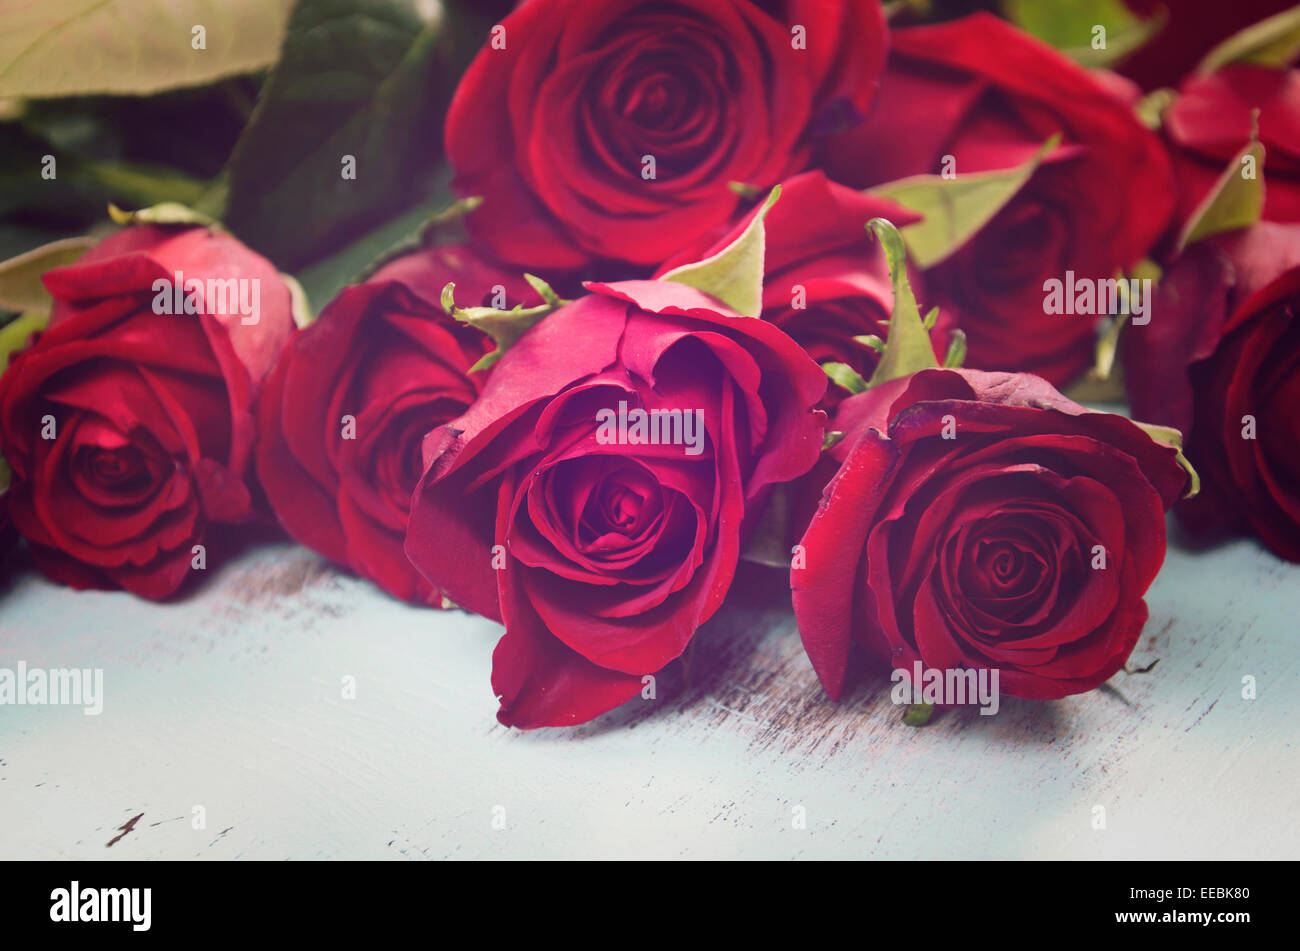 Vintage rote Rosen Geschenk für Valentinstag, Geburtstag oder besonderen Anlass auf blasse Aquablau recycelt notleidenden Holz Hintergrund. Stockfoto